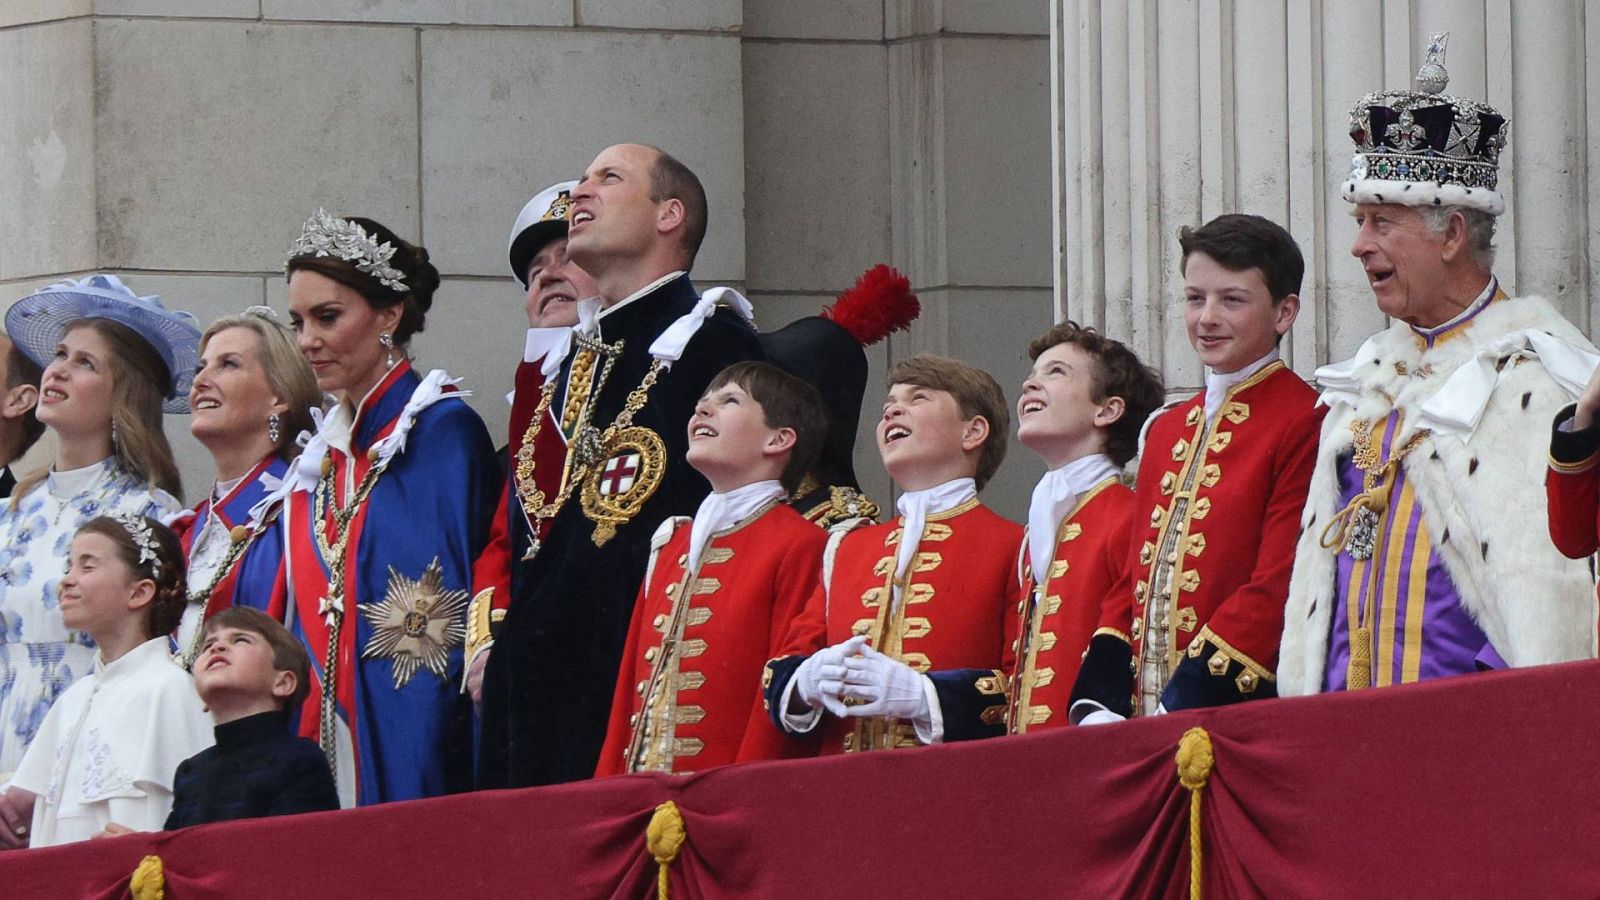 La familia real en el balcón del palacio de Buckingham: a la derecha aparece el rey Carlos III y en el centro, con capa negra, el heredero al trono, Guillermo de Gales; el tercer paje por la derecha es su hijo y segundo en la línea de sucesión, Jorge